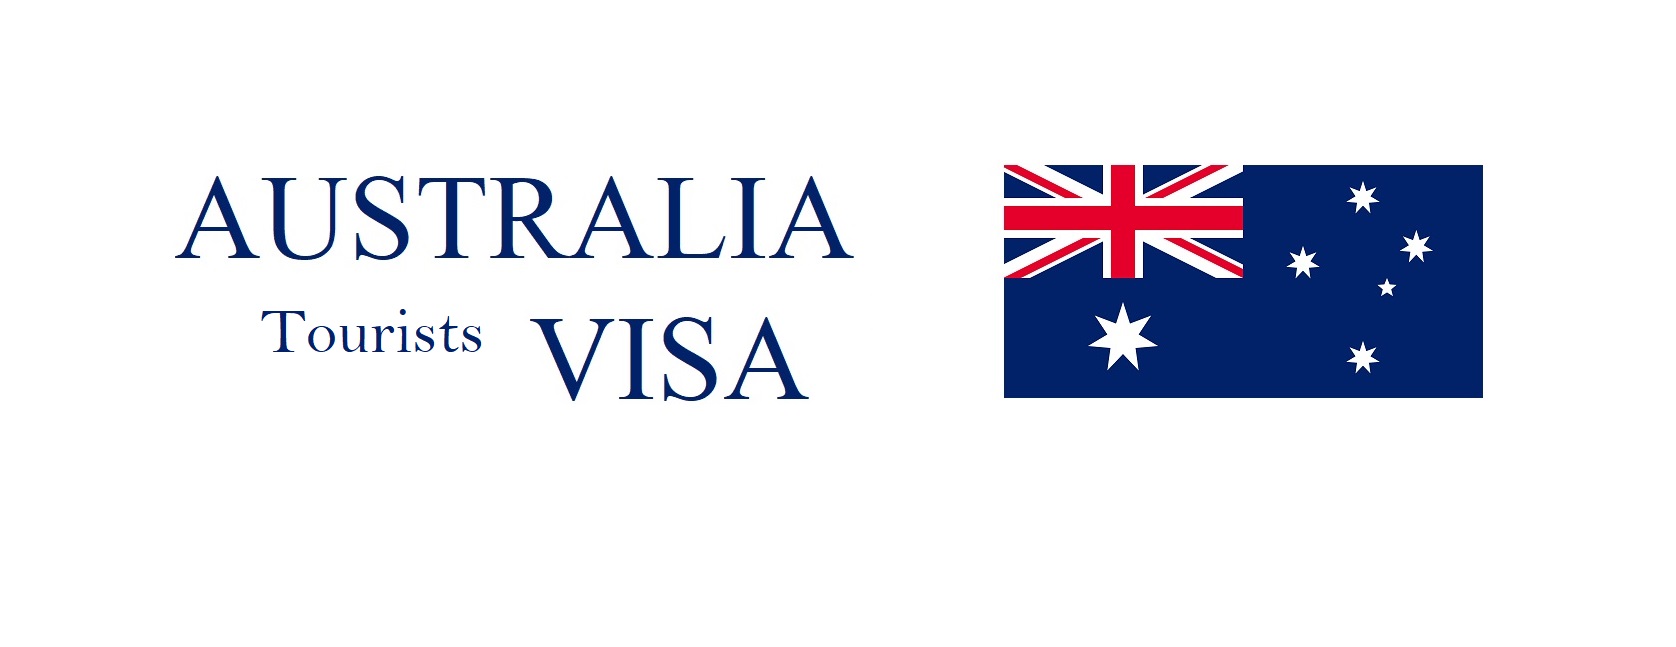 Australia Visa Policy